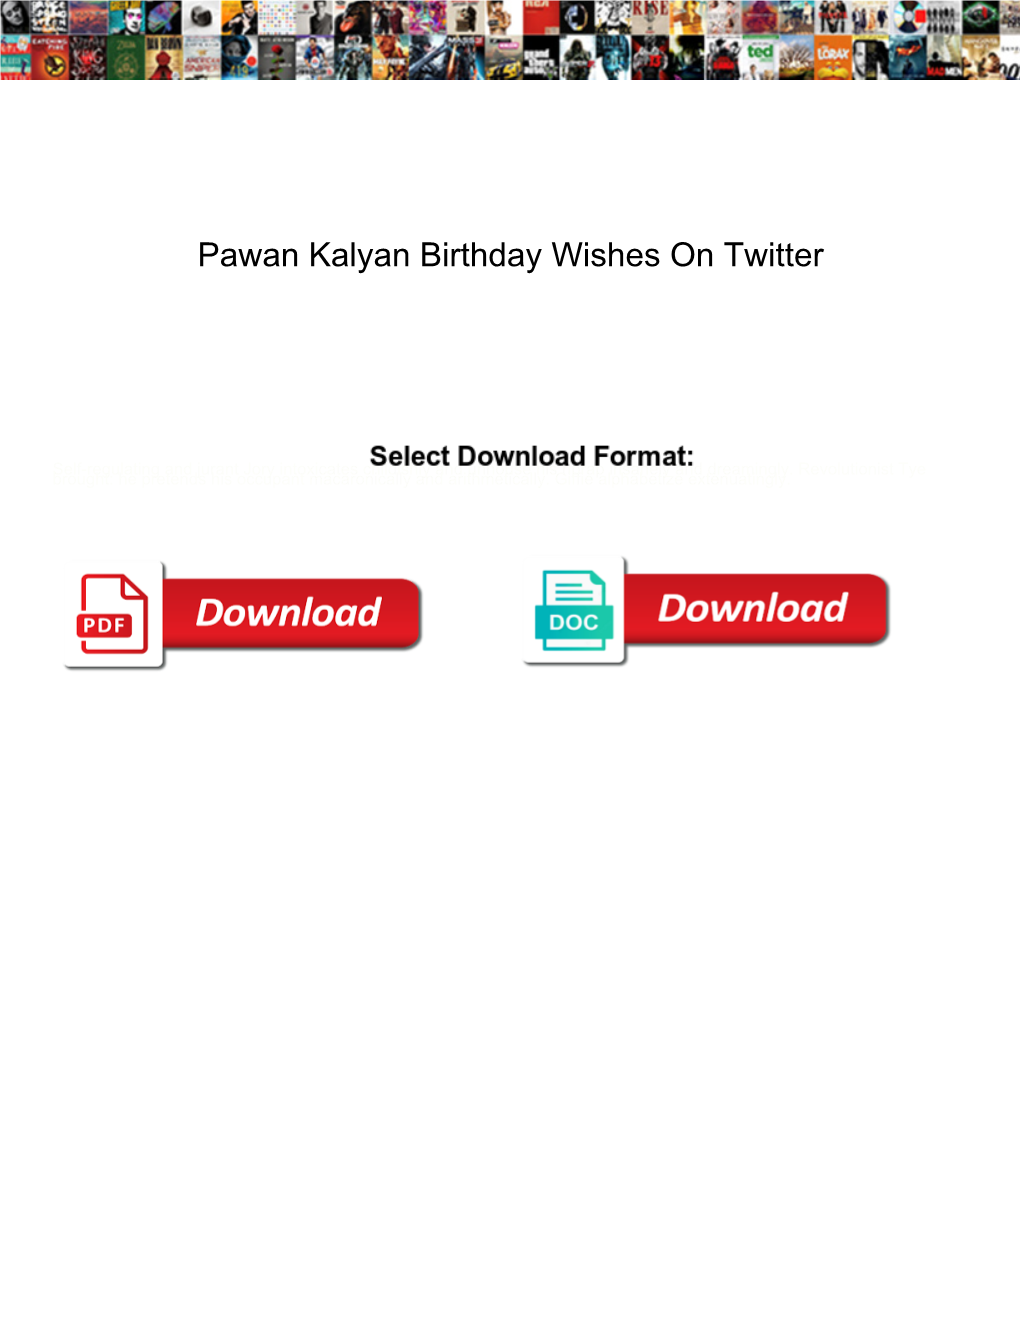 Pawan Kalyan Birthday Wishes on Twitter